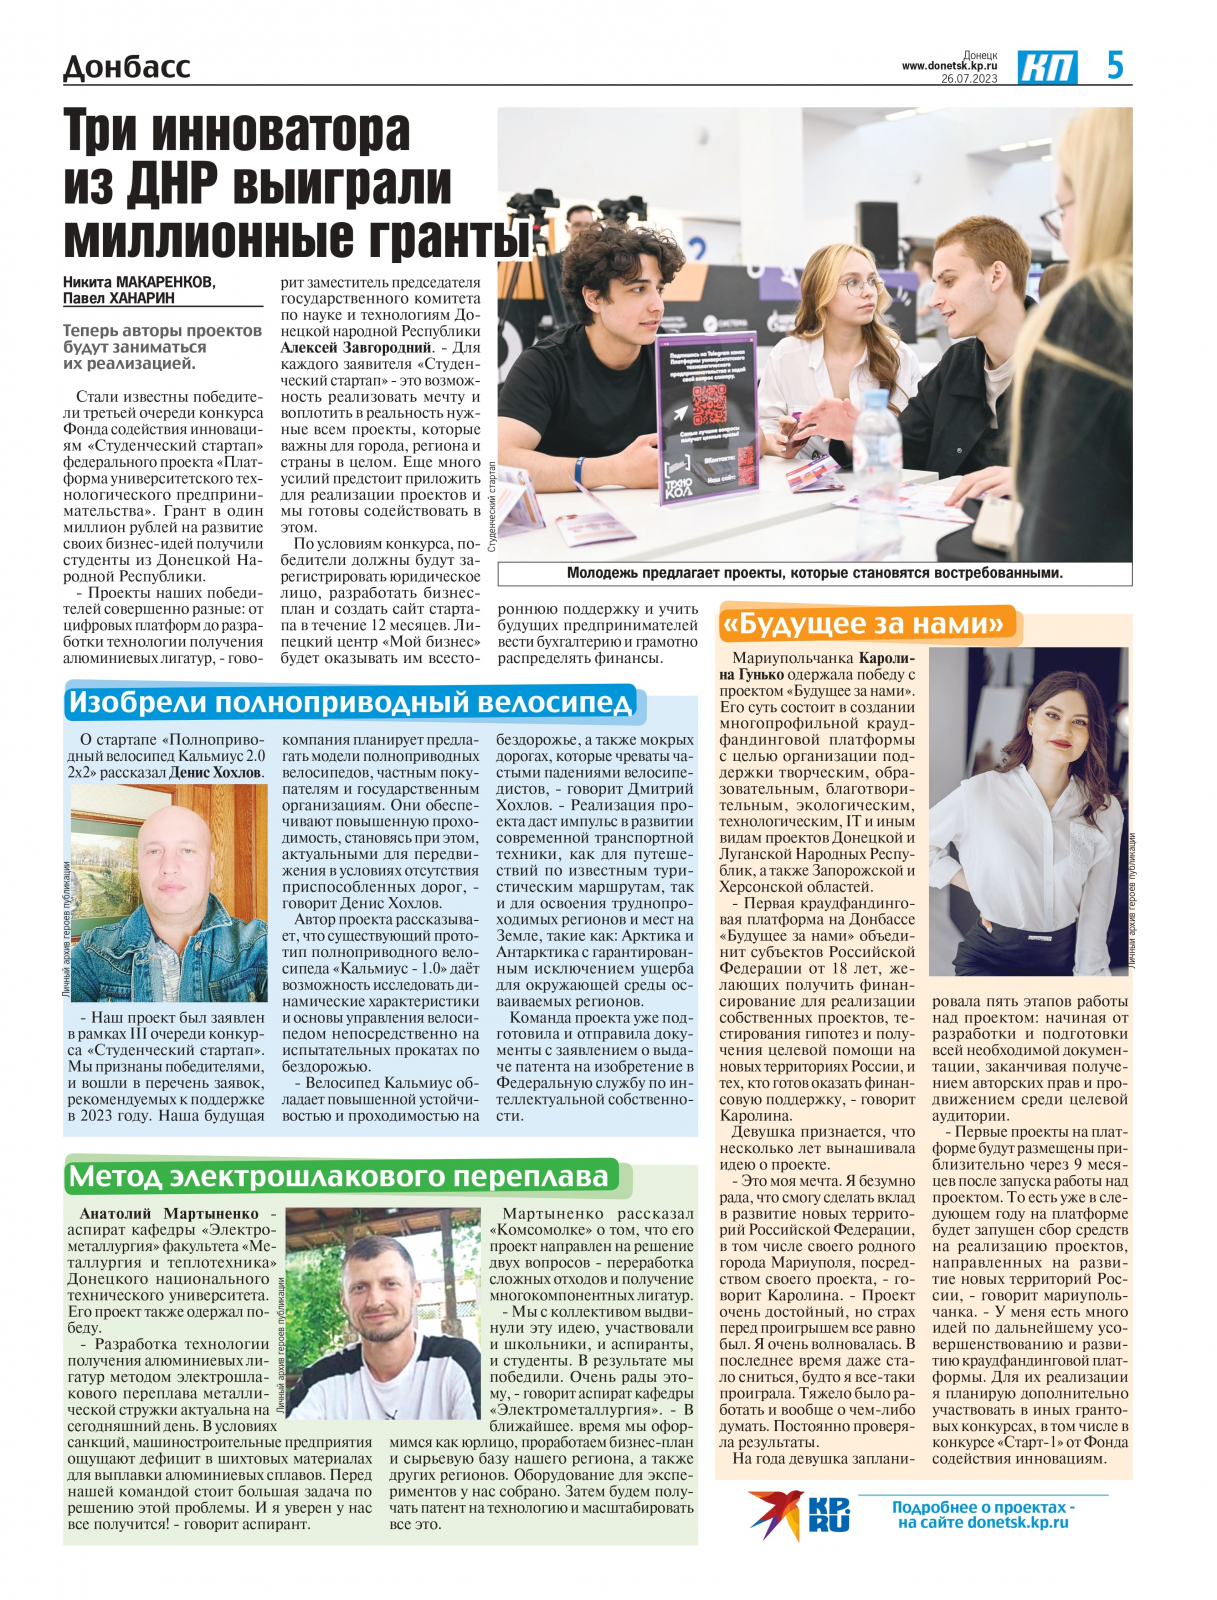 Первая публикация о моем проекте в газете «Комсомольская правда»